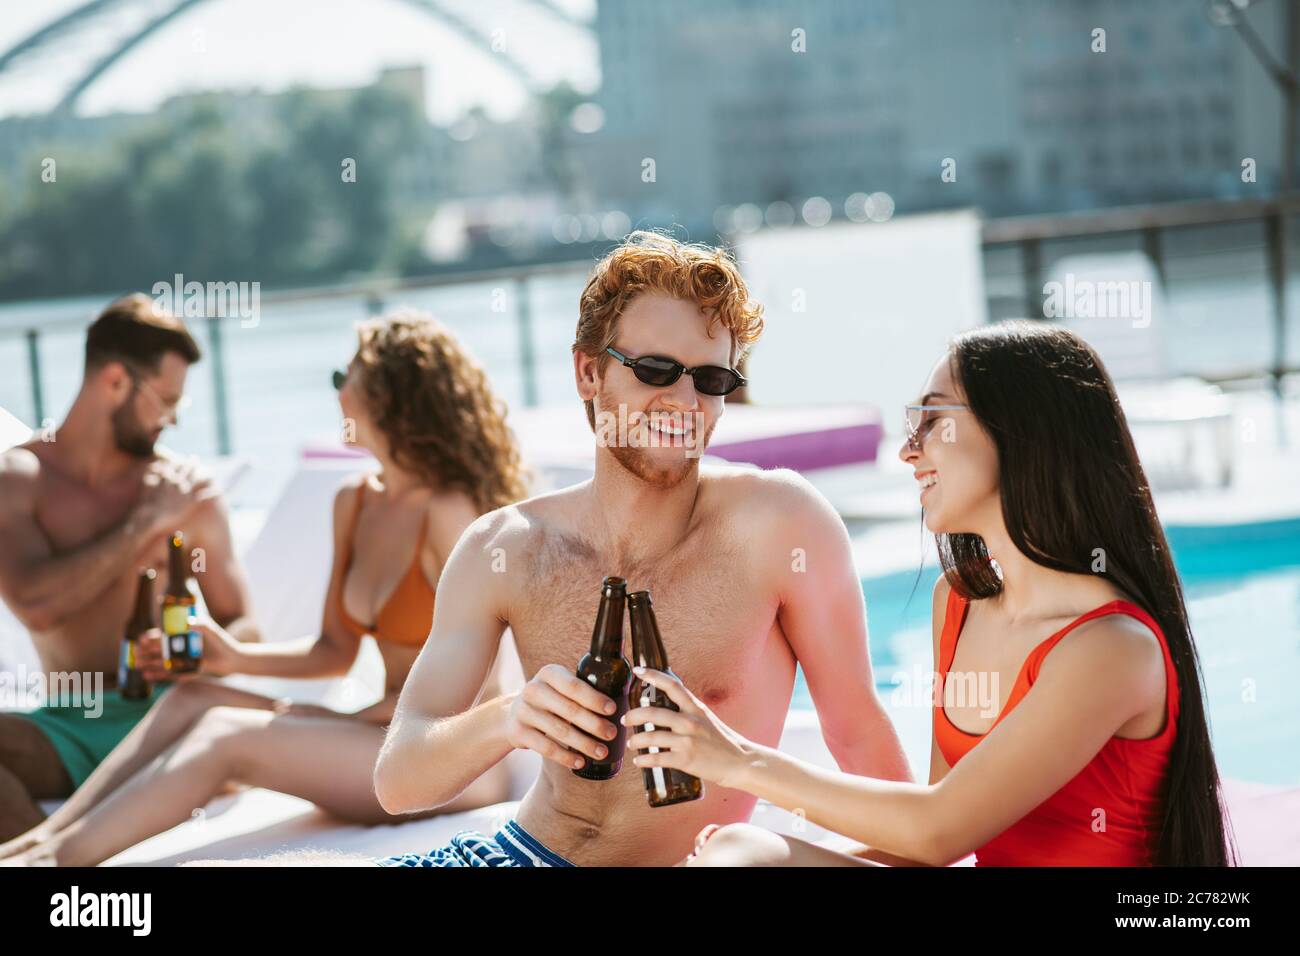 Junge Männer und Frauen trinken zusammen Bier und fühlen sich kokett Stockfoto